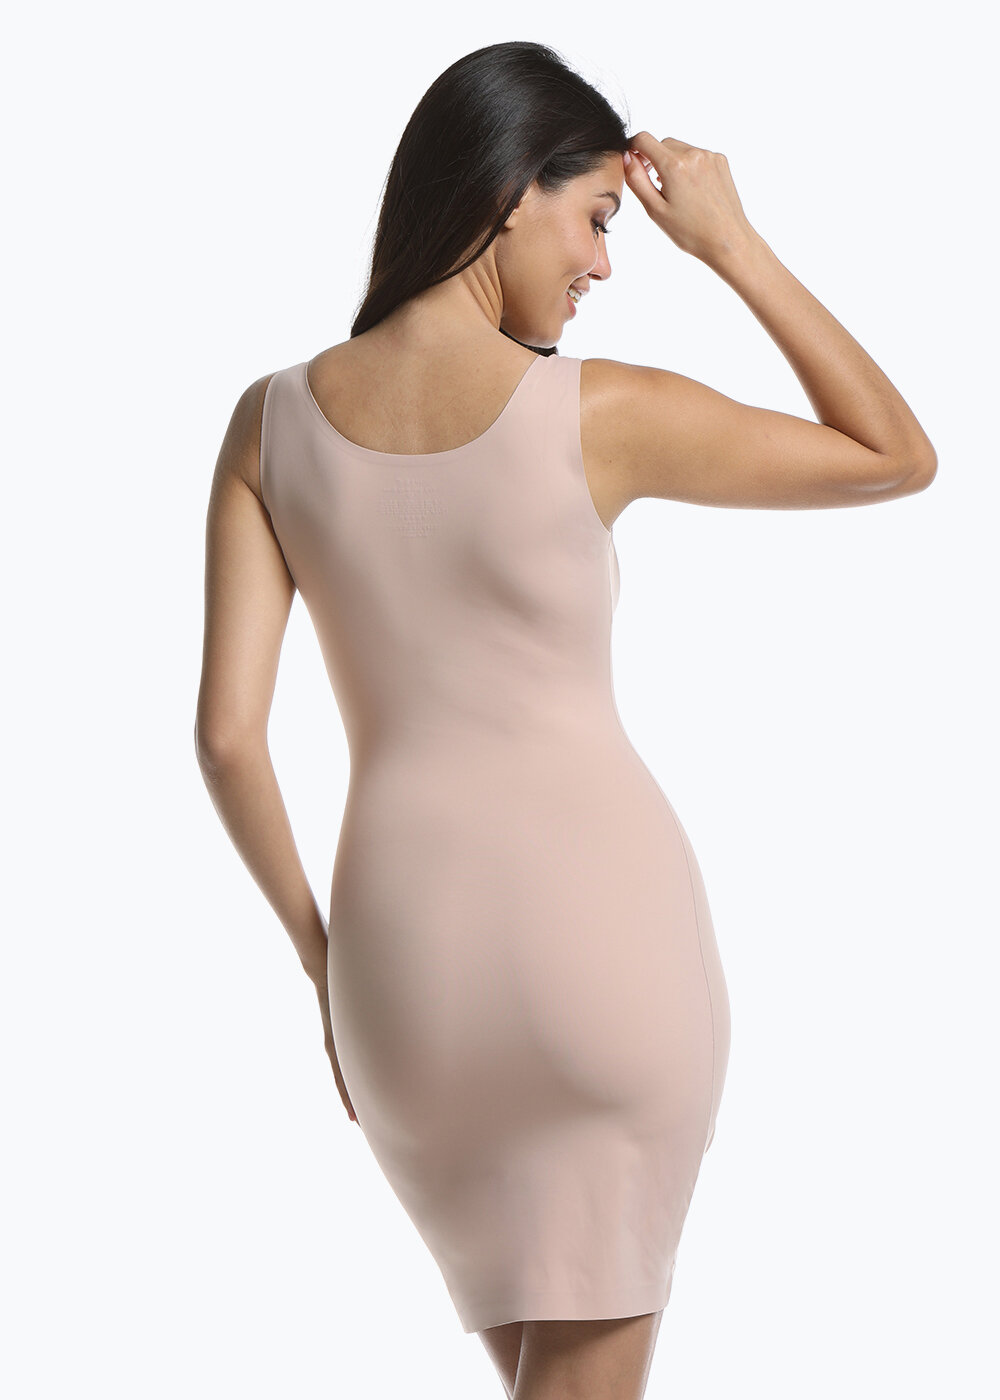 Women's Dream Body Shaper Nude Under Dress Shapewear Size Med